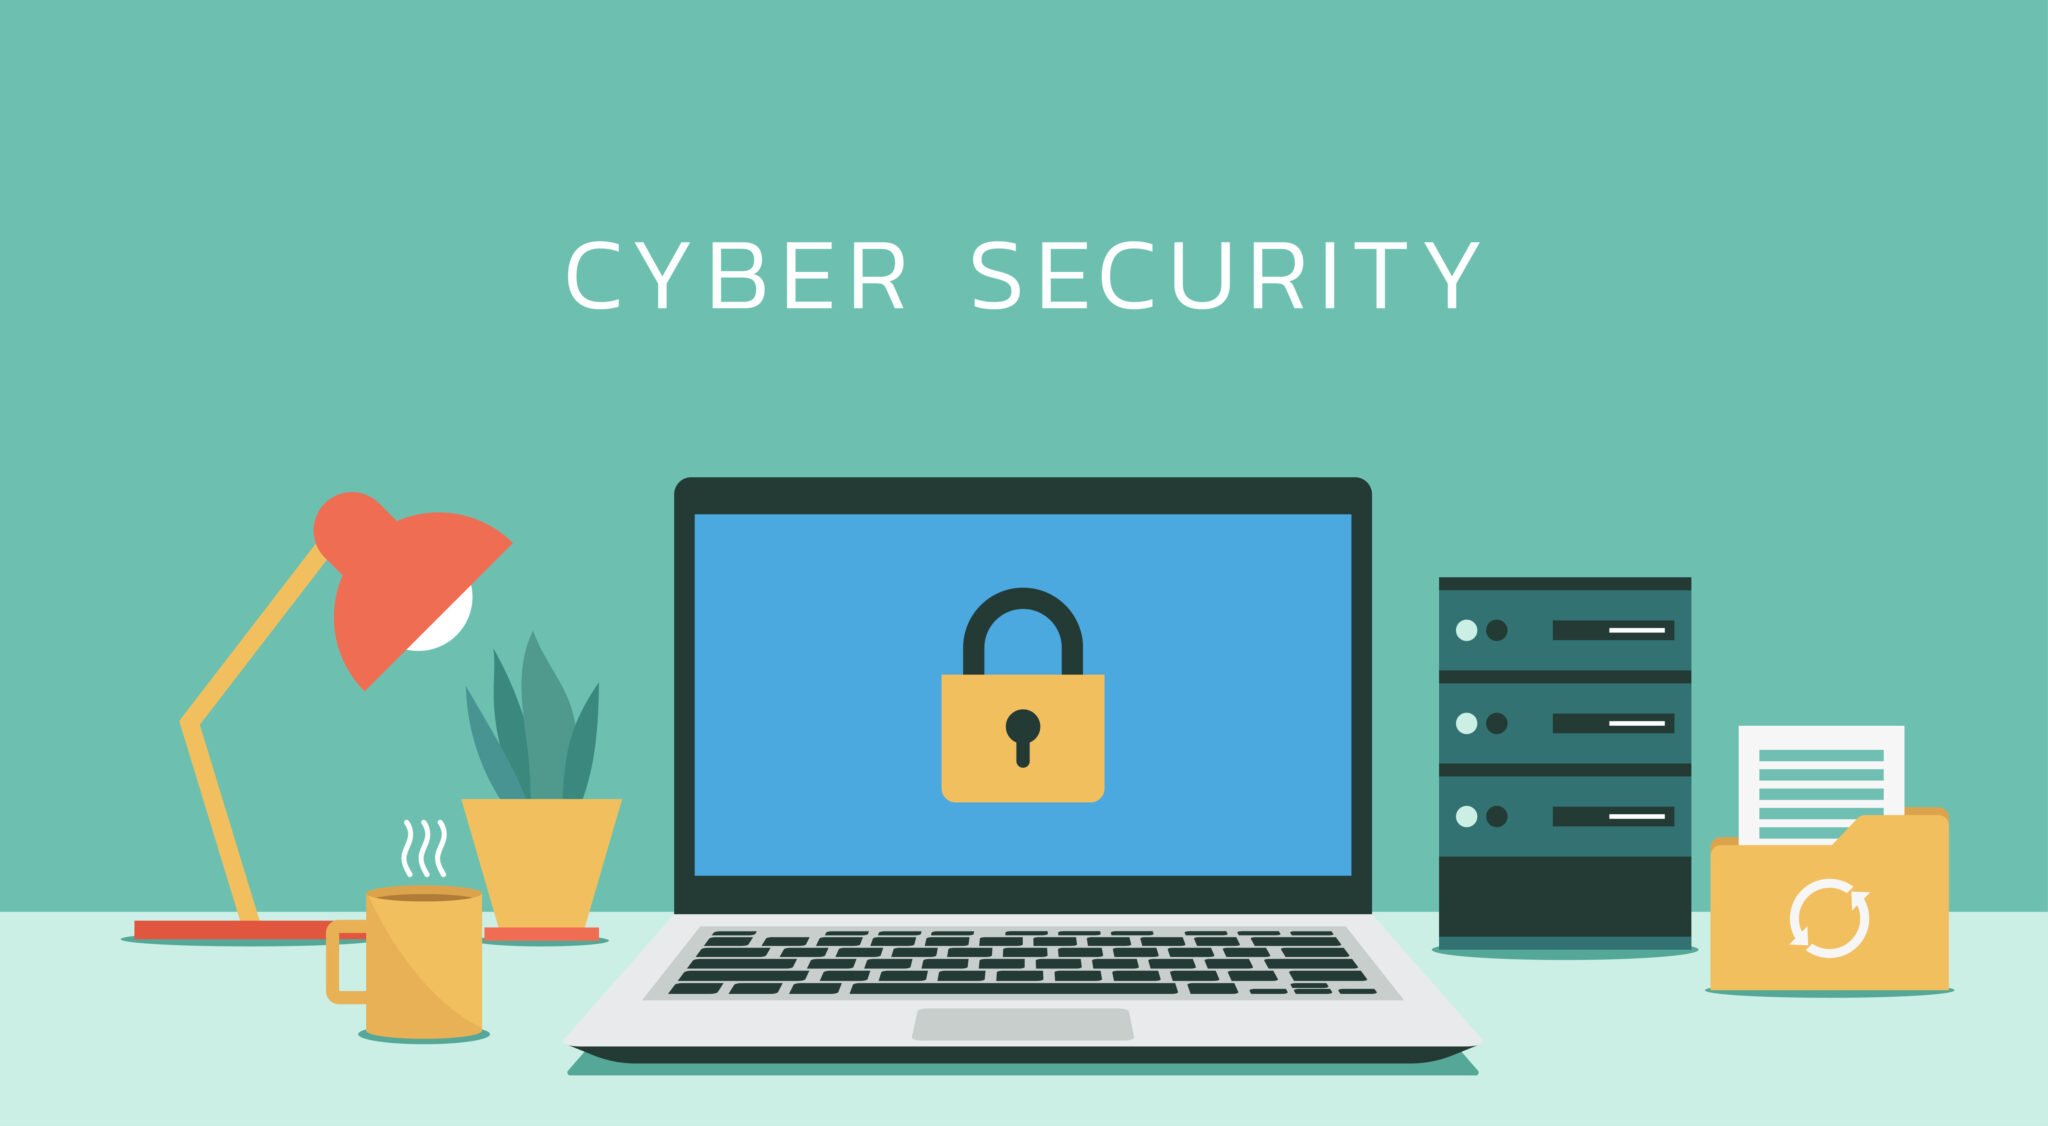 10 conseils de cybersécurité pour se protéger